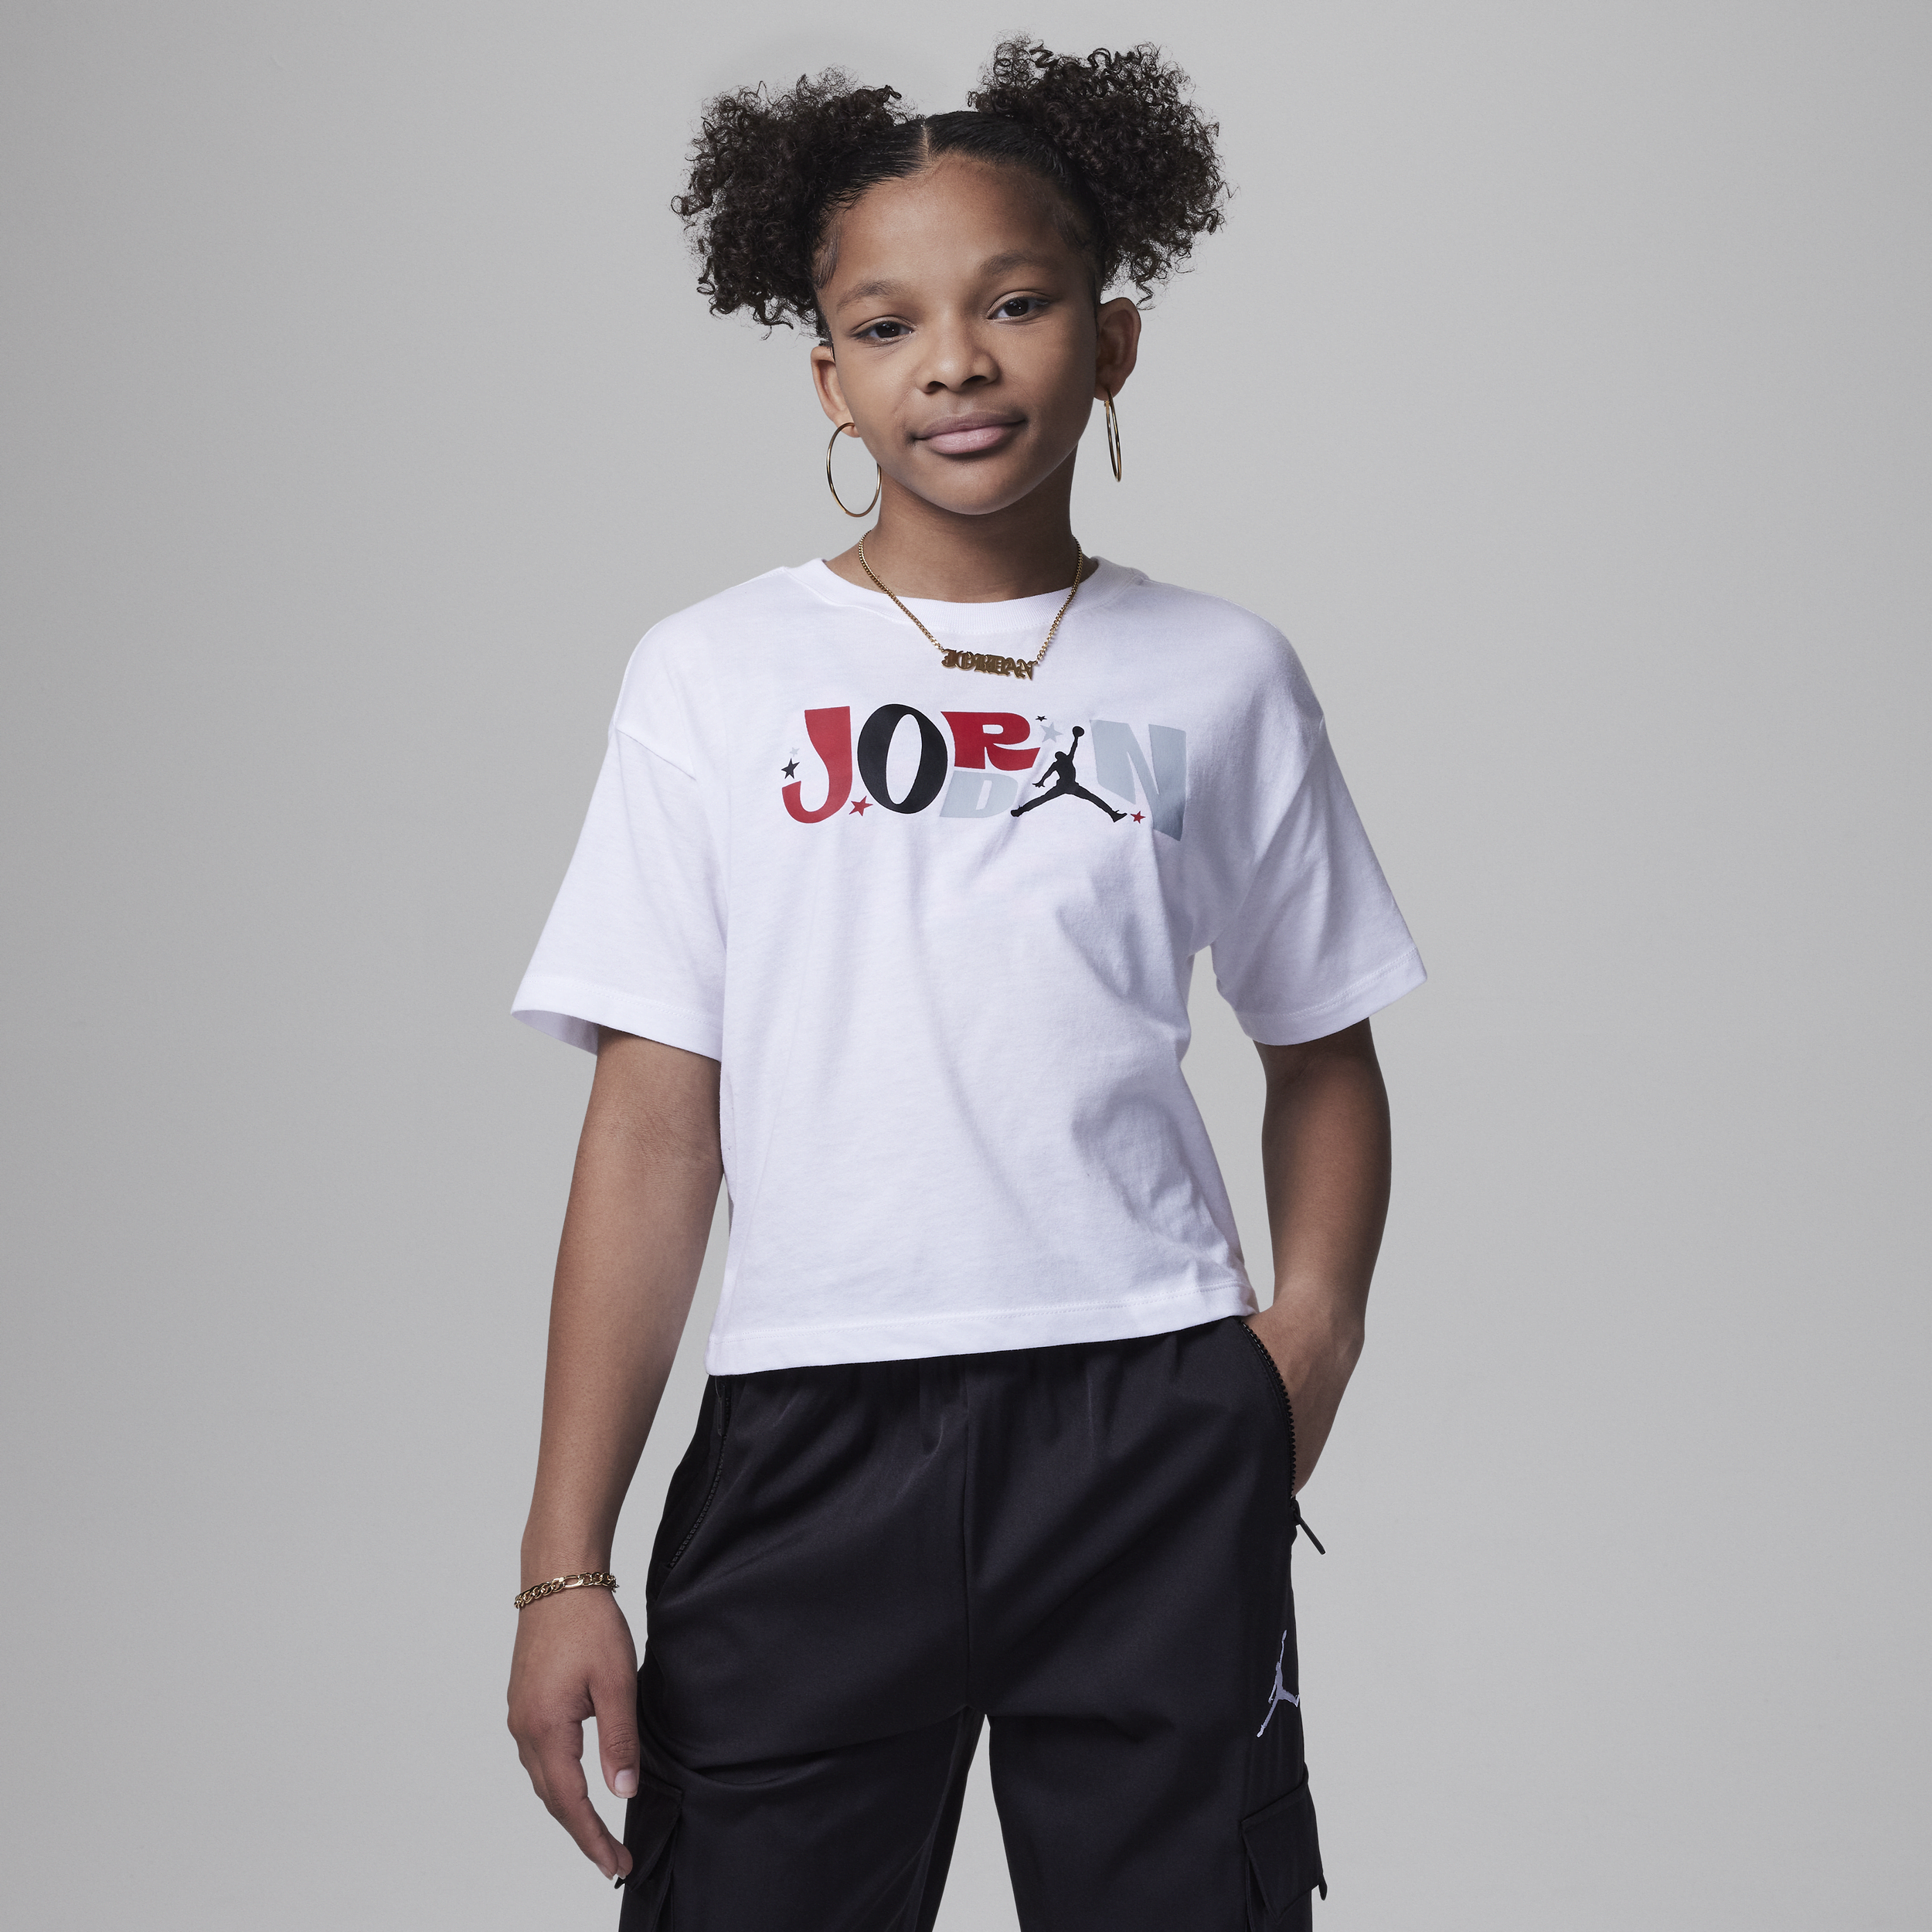 Jordan All Star Tee T-shirt voor kids - Wit